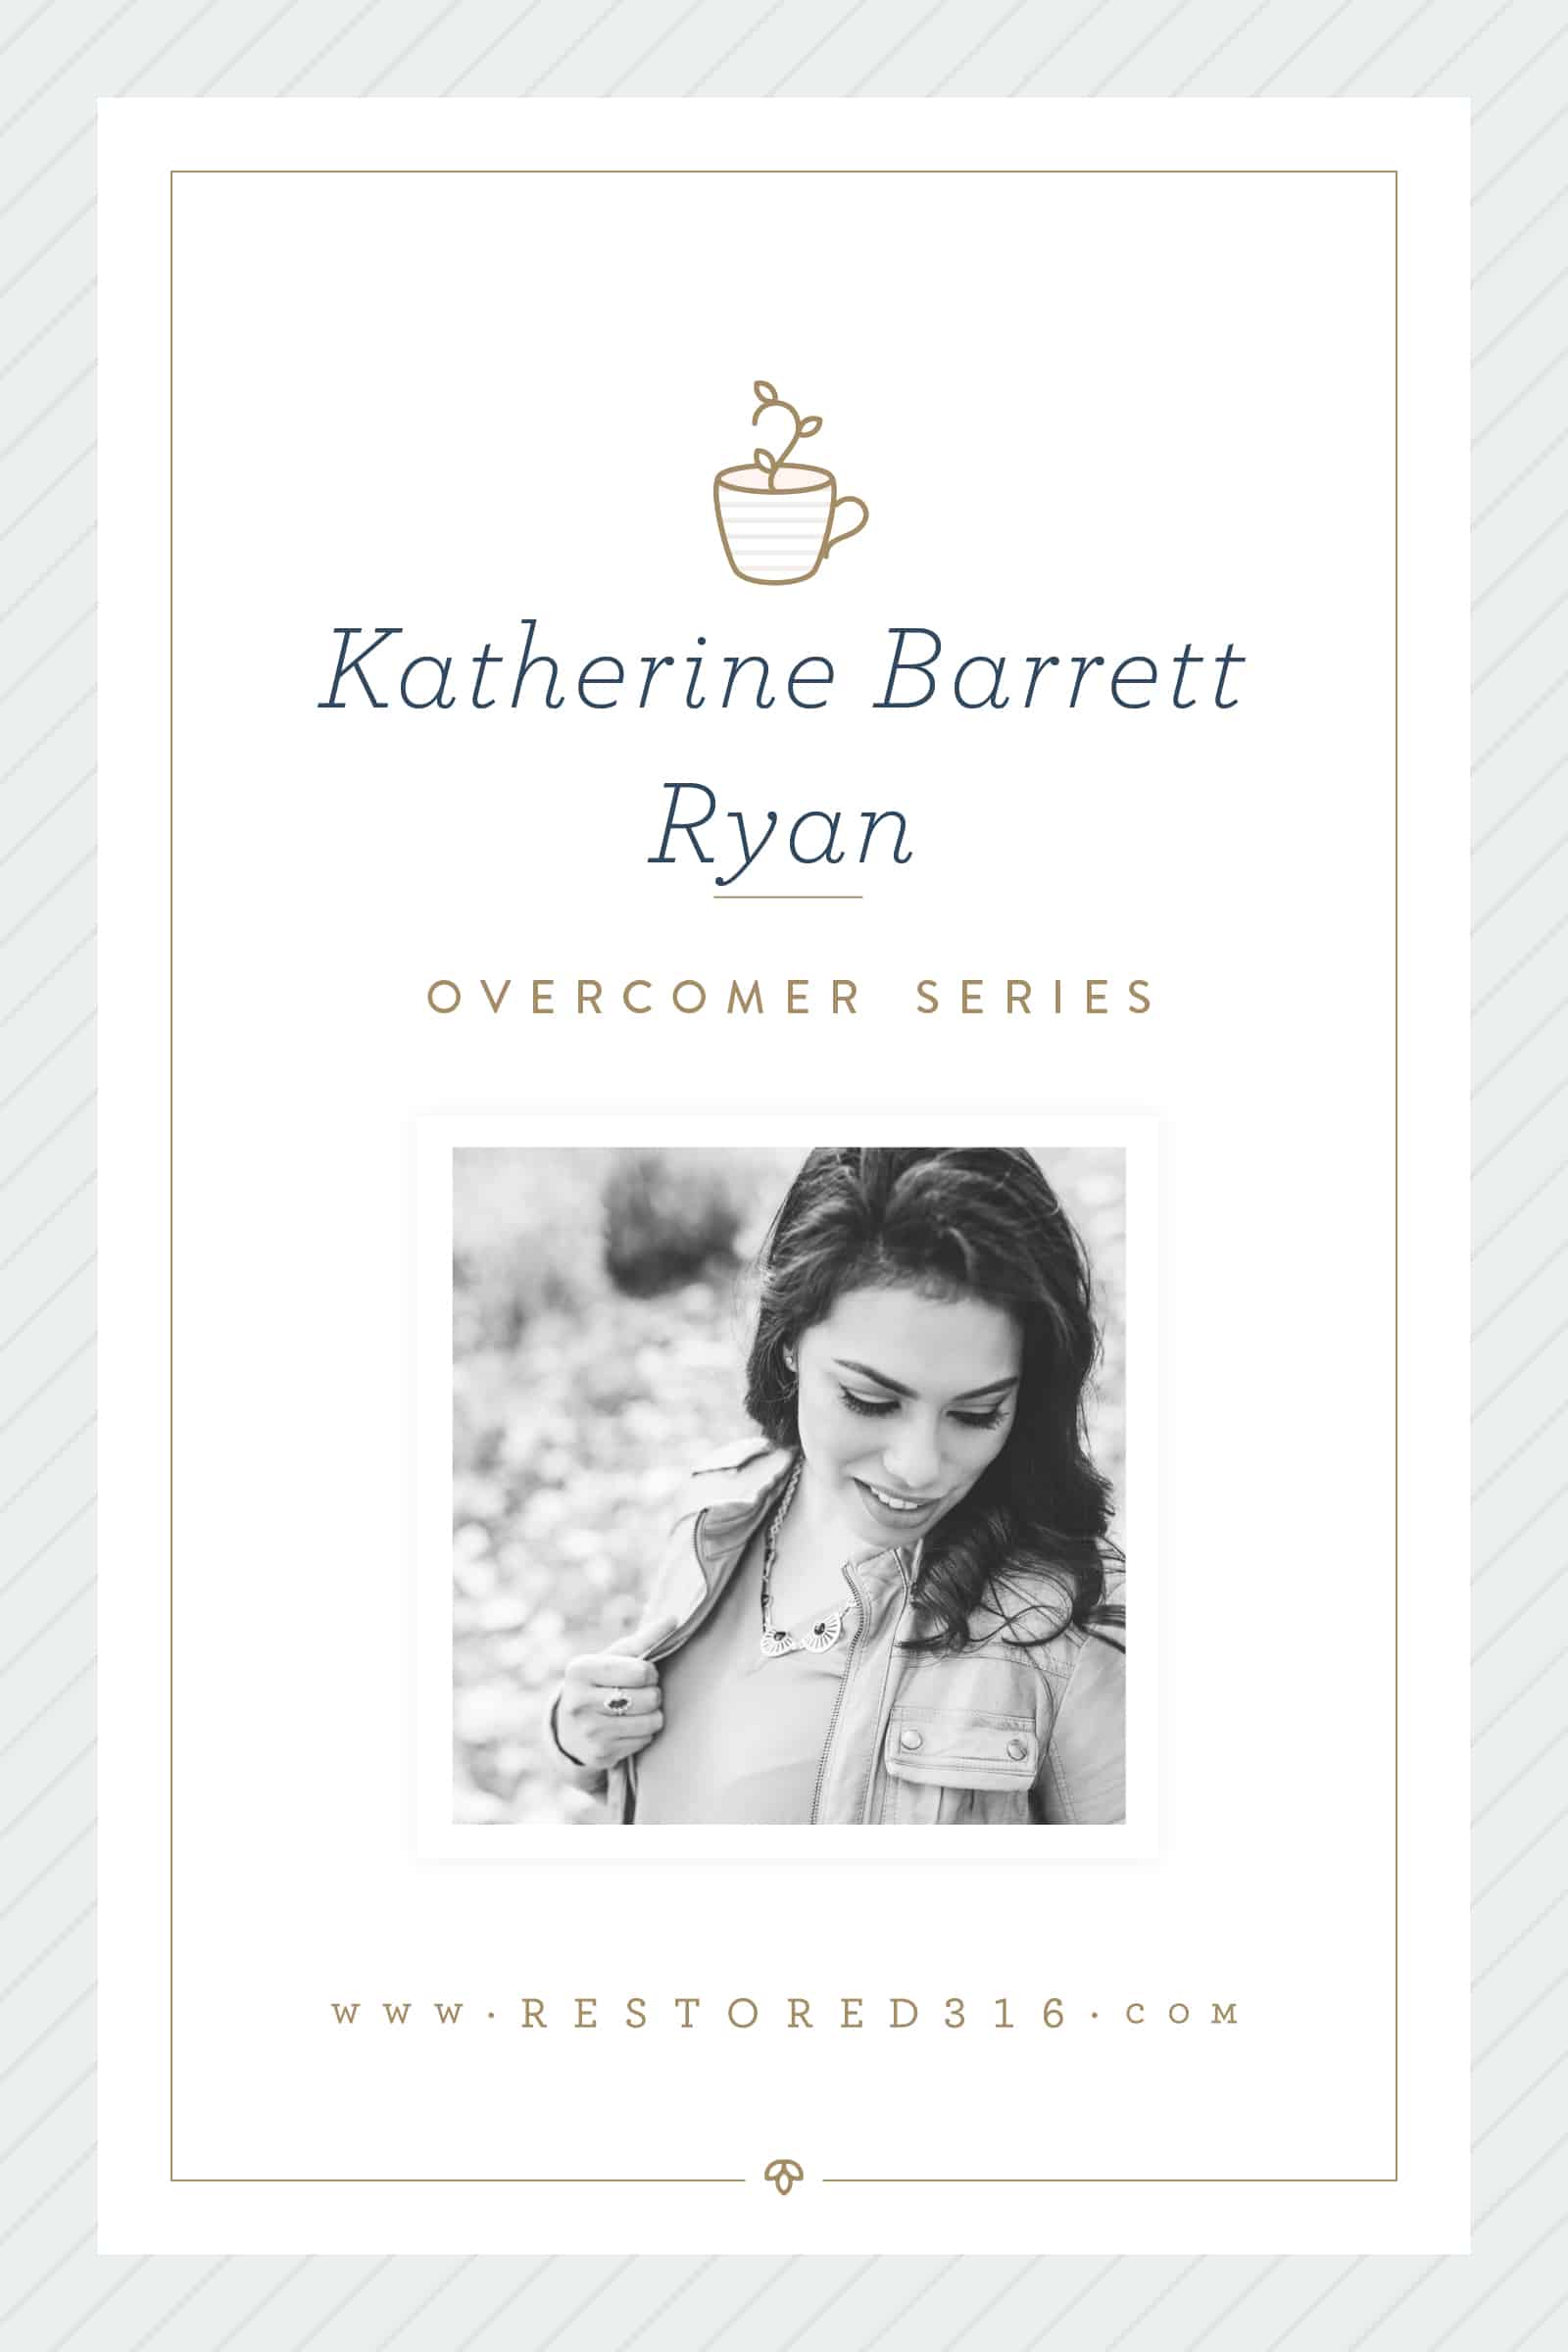 Overcomer Series with Katherine Barrett Ryan